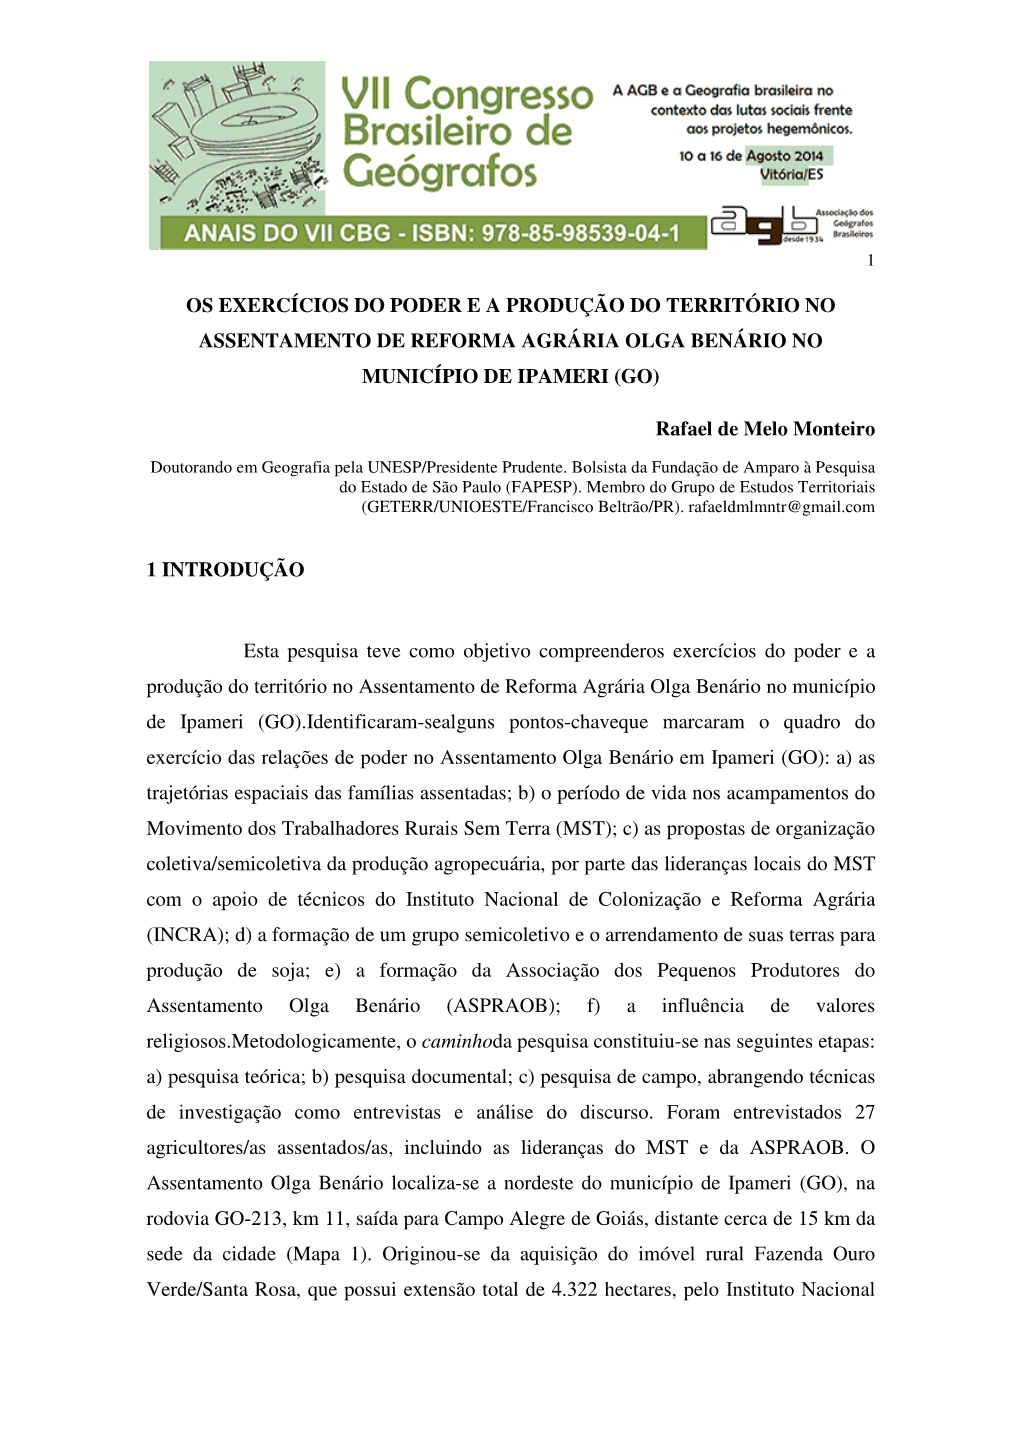 Os Exercícios Do Poder E a Produção Do Território No Assentamento De Reforma Agrária Olga Benário No Município De Ipameri (Go)